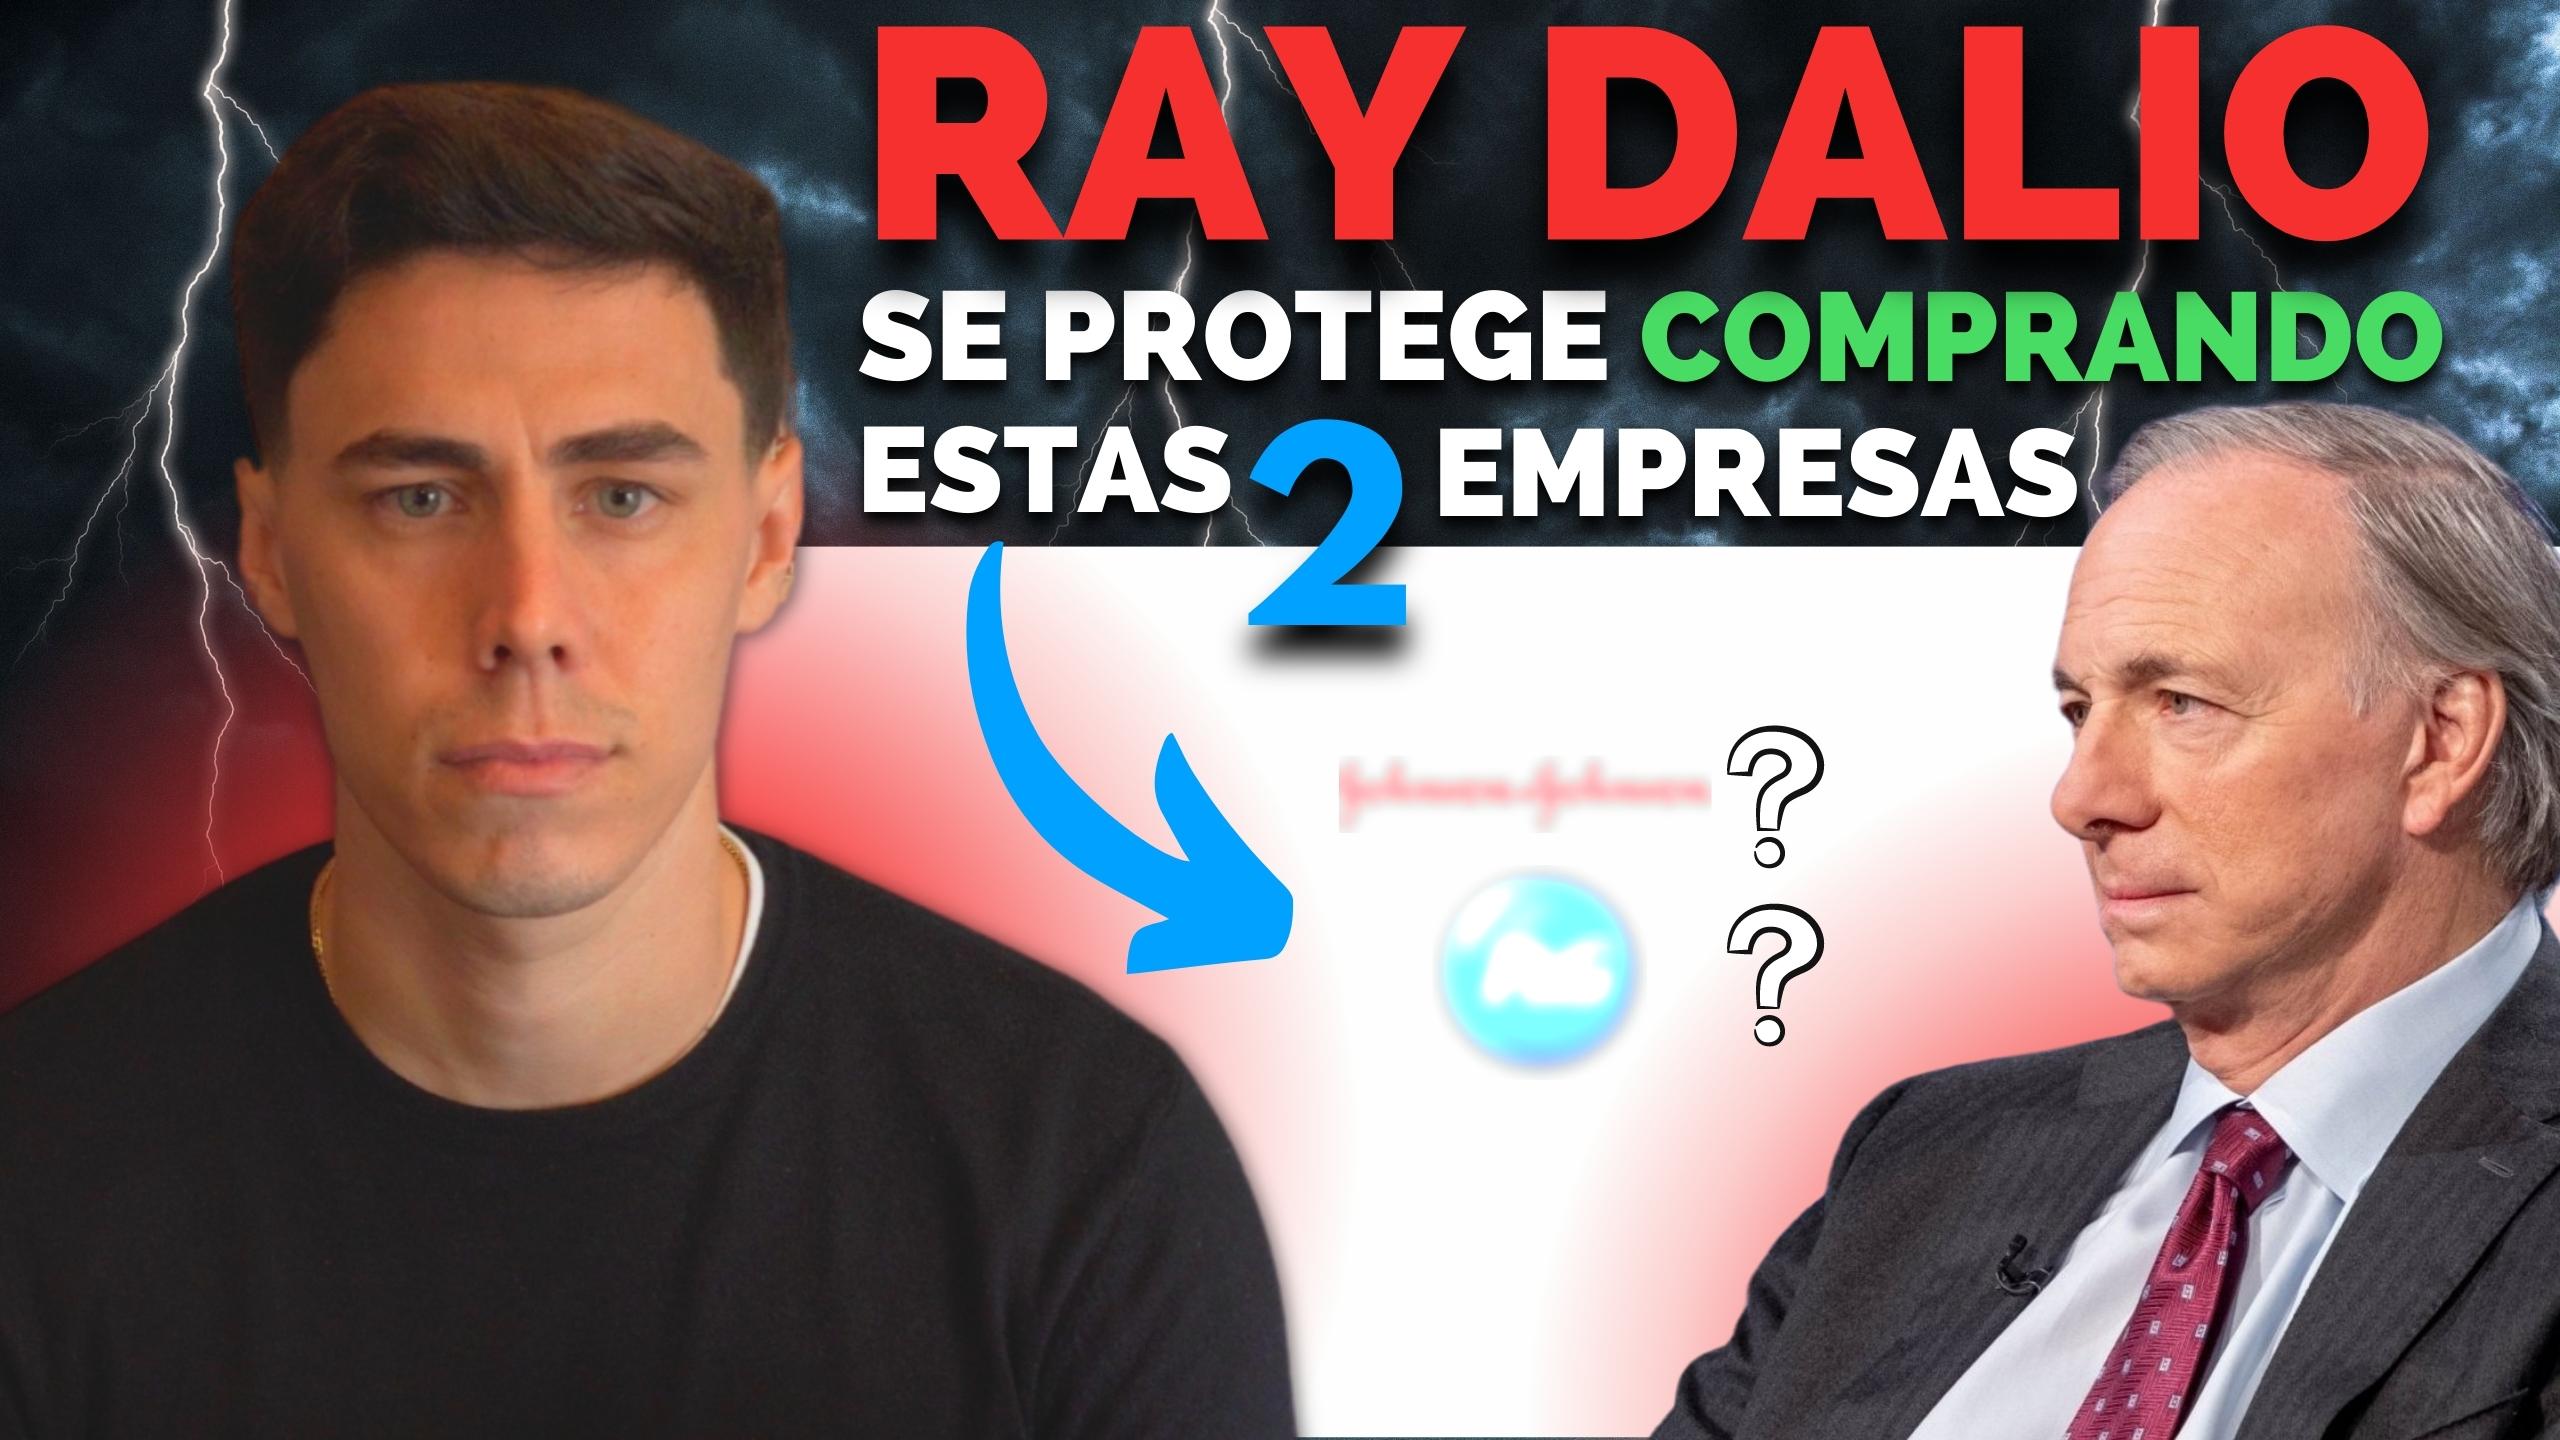 Ray Dalio “2023 Será El Peor Año Económico De La Historia” (conoce Sus 2 Principales Inversiones)